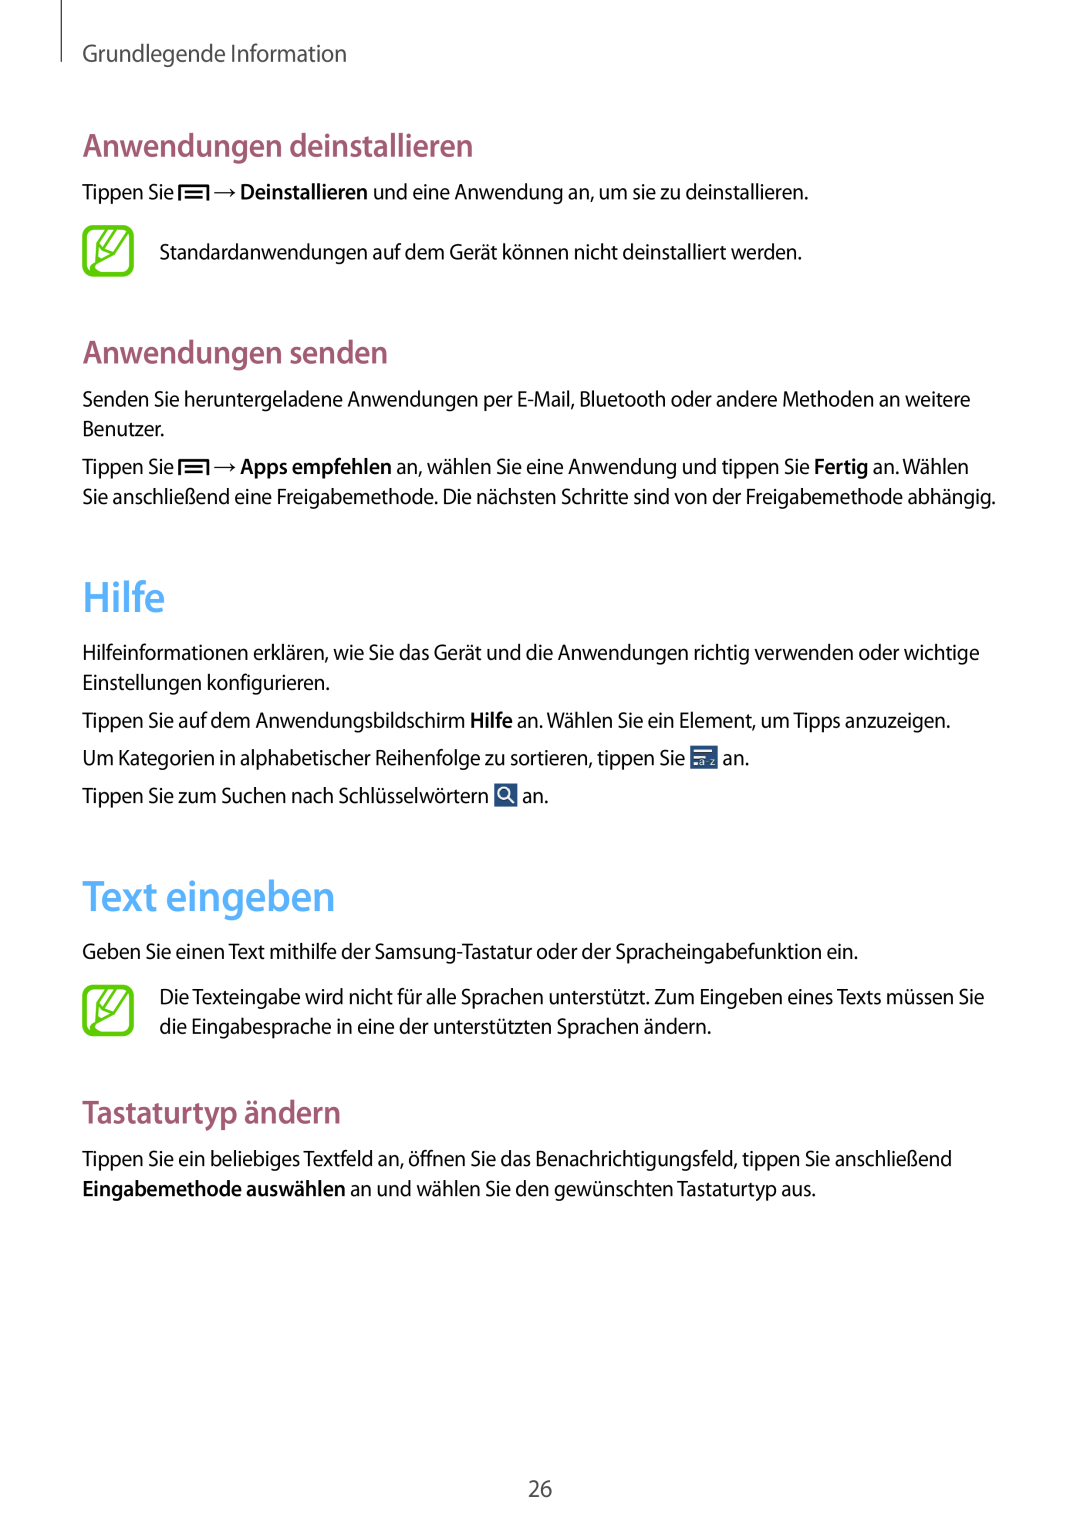 Samsung SM-T110NYKADBT manual Hilfe, Text eingeben, Anwendungen deinstallieren, Anwendungen senden, Tastaturtyp ändern 